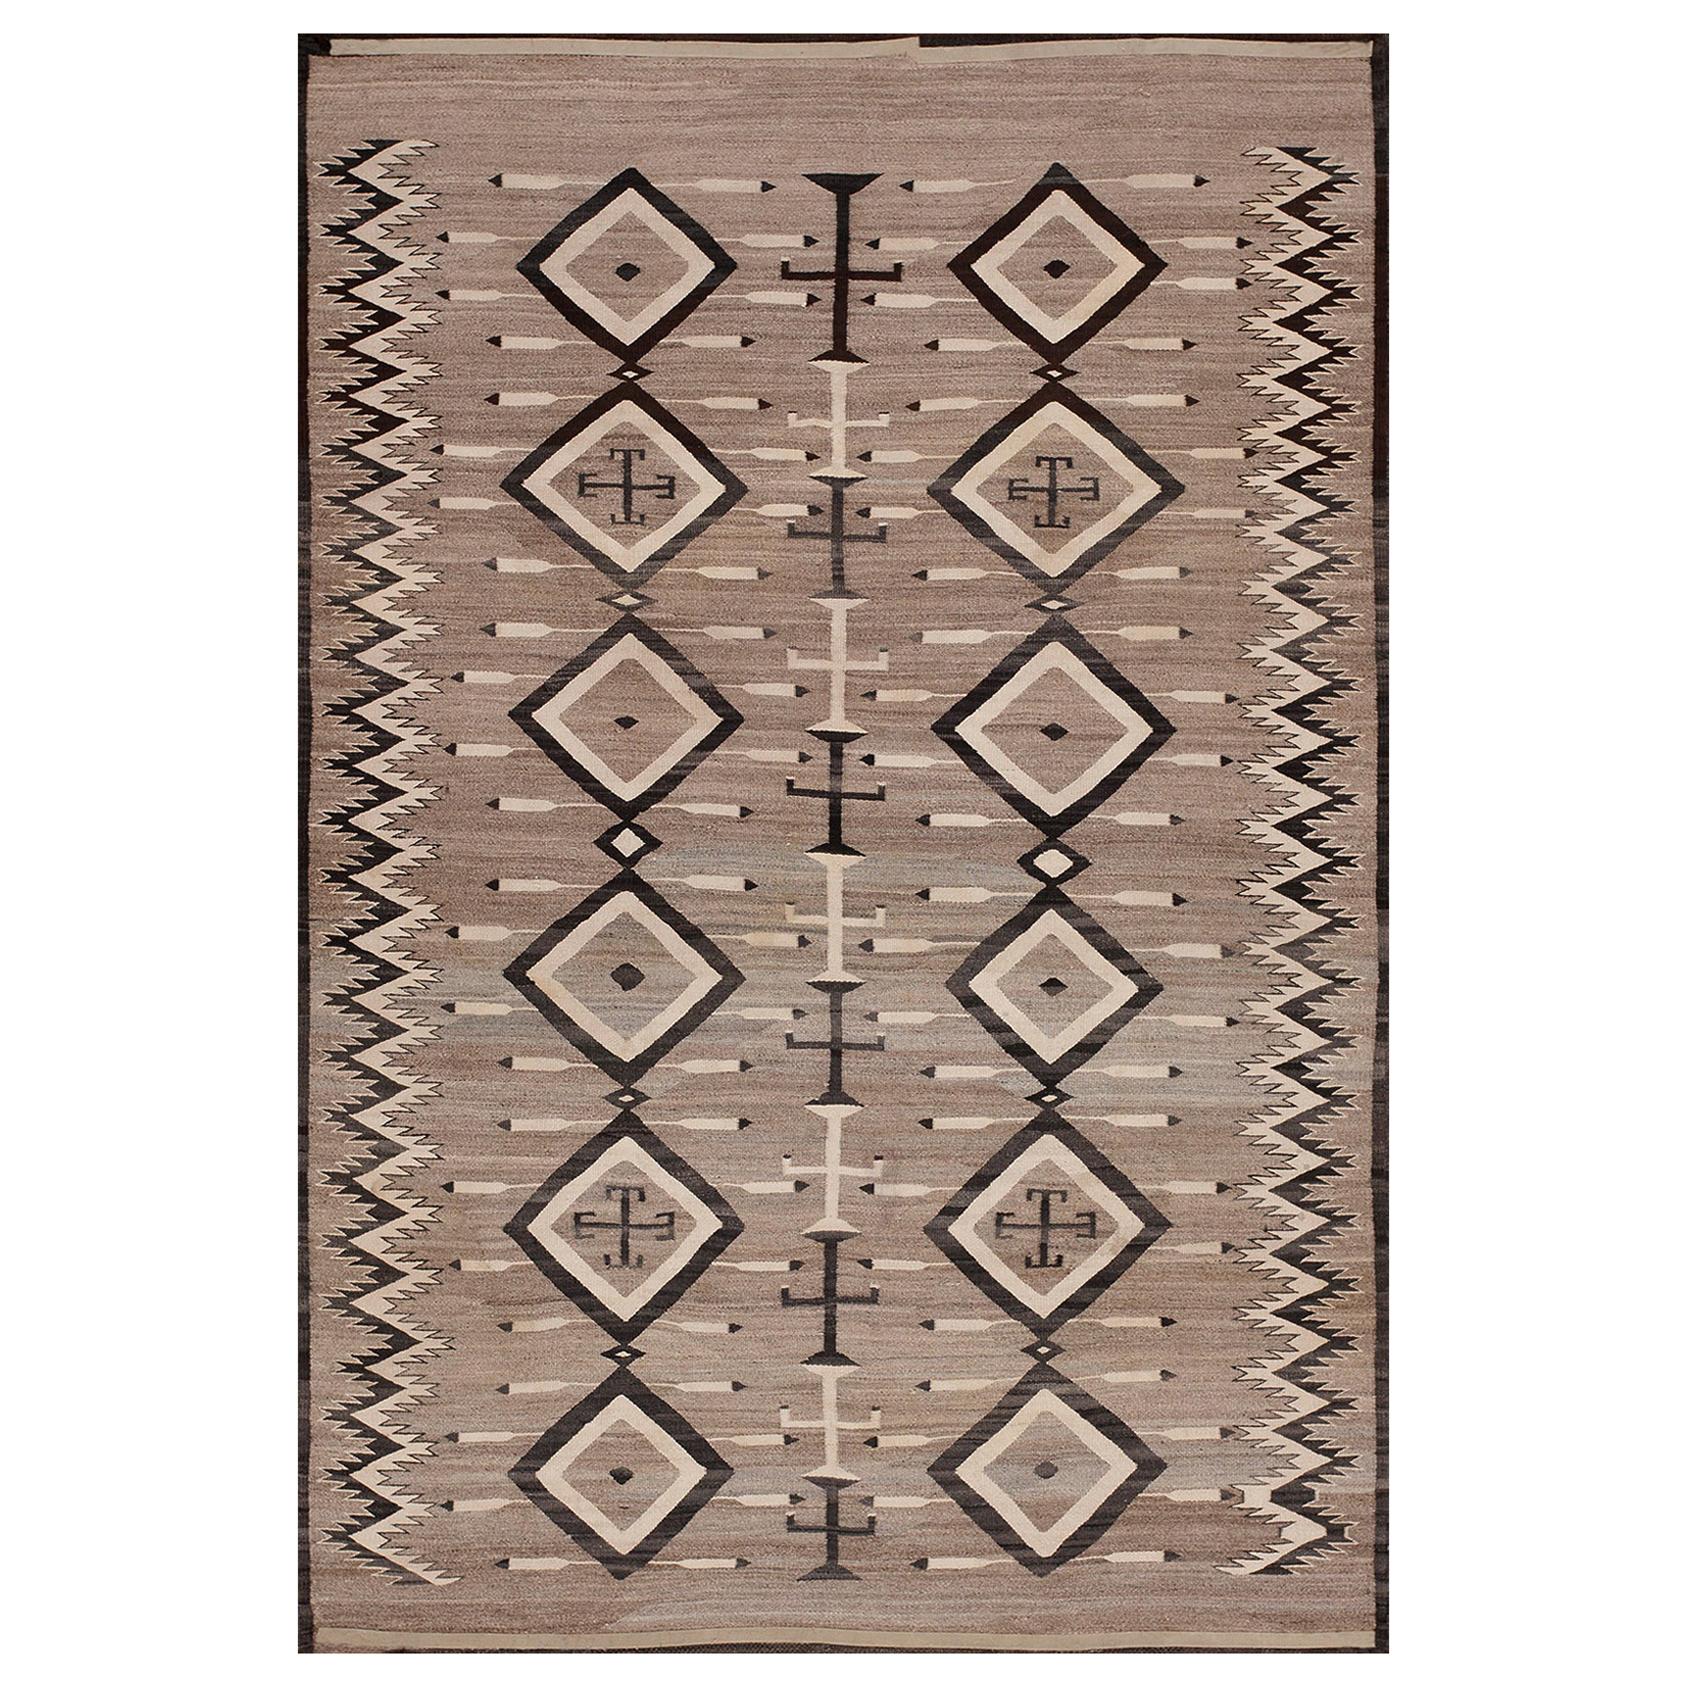 Amerikanischer Navajo-Teppich des frühen 20. Jahrhunderts ( 4'6" x 6'8" - 137 x 203")